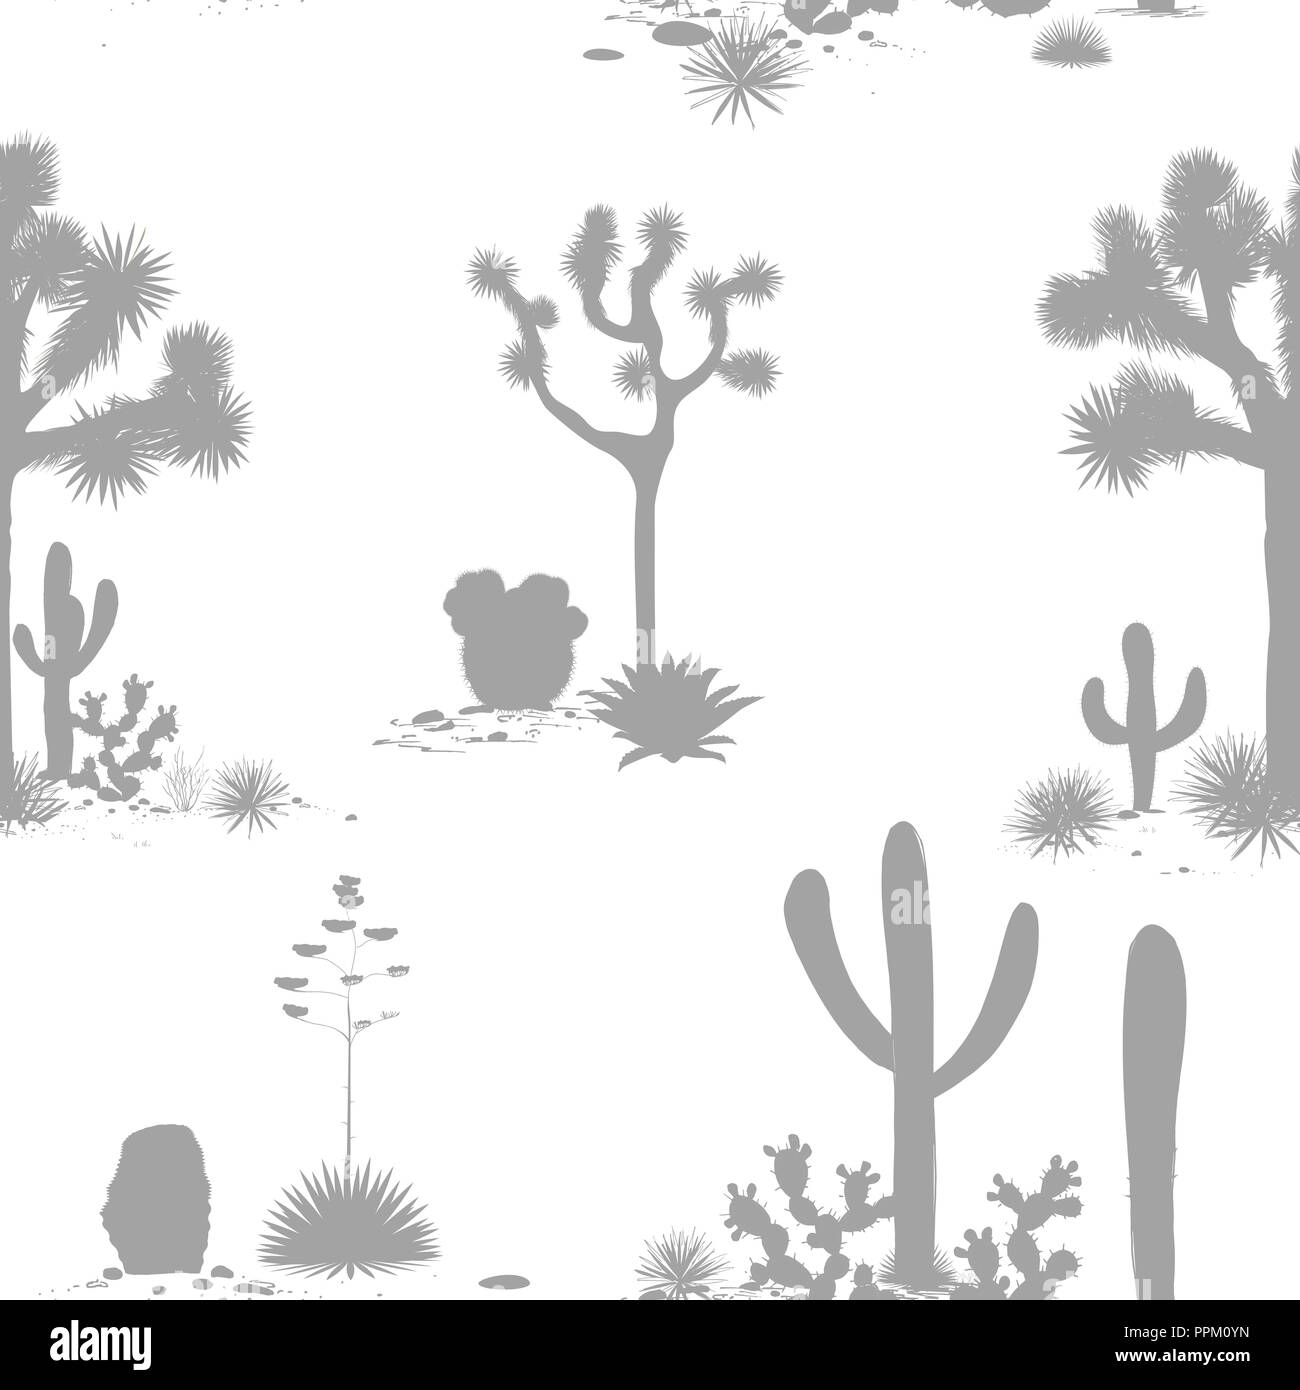 Desierto patrón sin fisuras con las siluetas de los árboles Joshua, Opuntia, y saguaro. Antecedentes de cactus. Ilustración vectorial para wallpapers, textiles, Ilustración del Vector